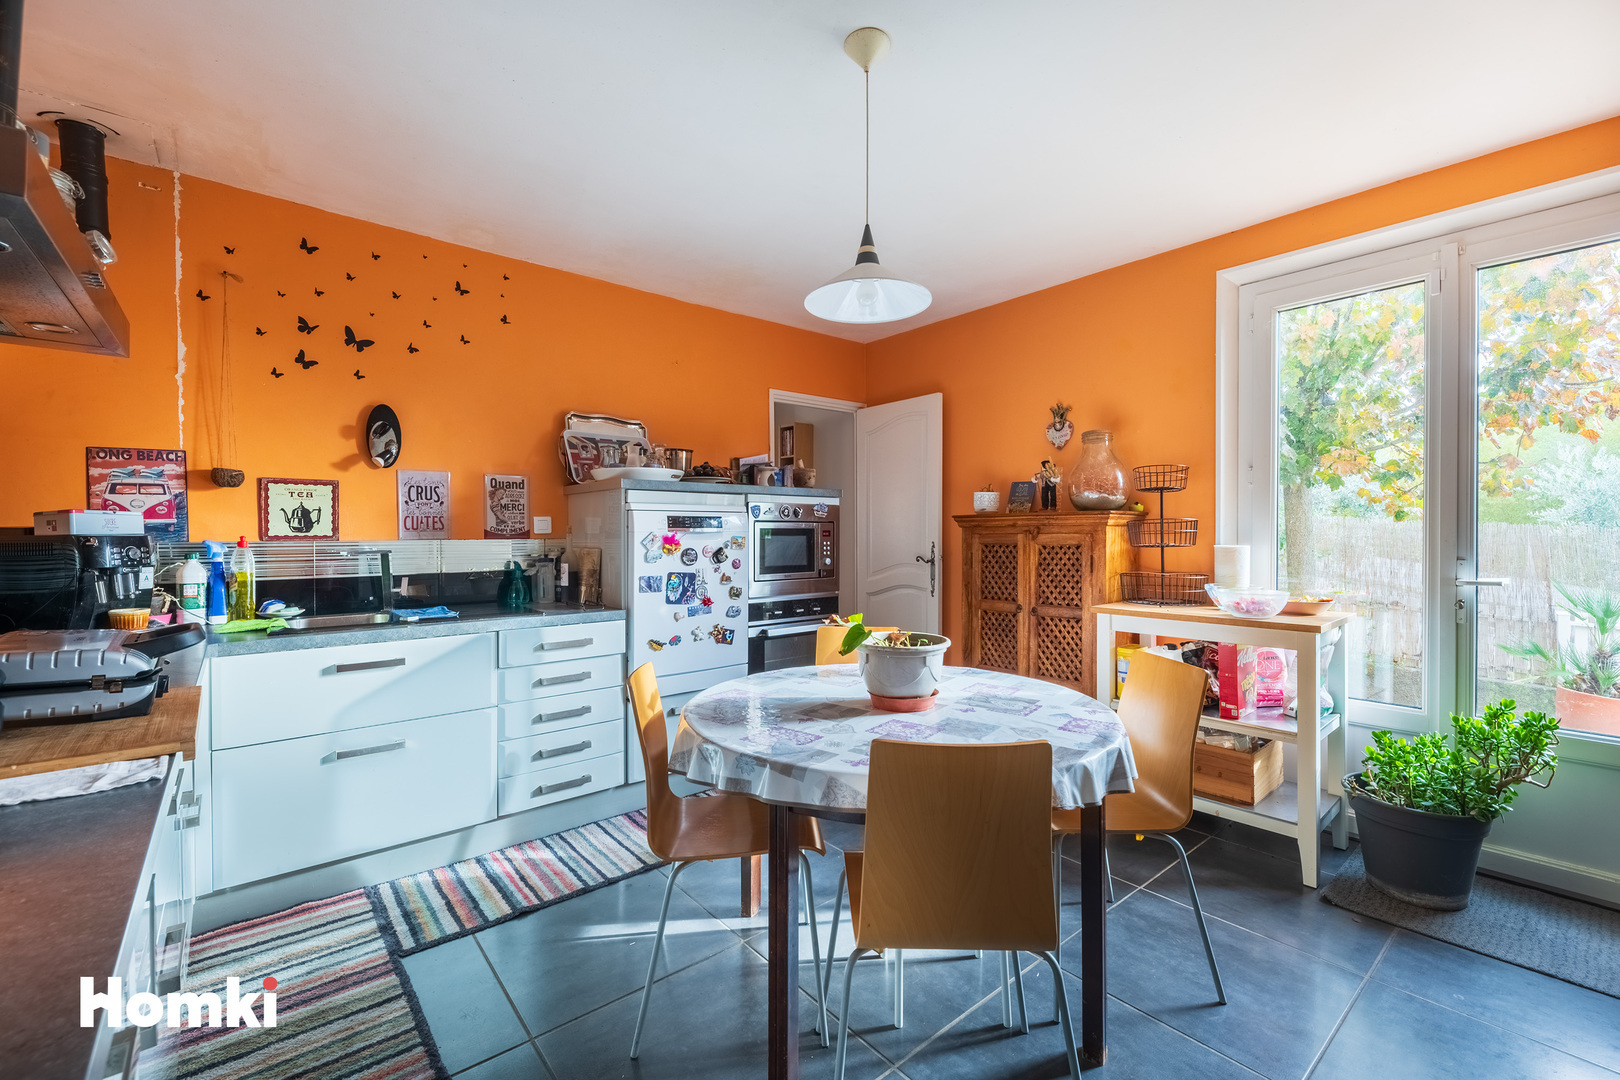 Homki - Vente Maison/villa  de 140.0 m² à Gardanne 13120